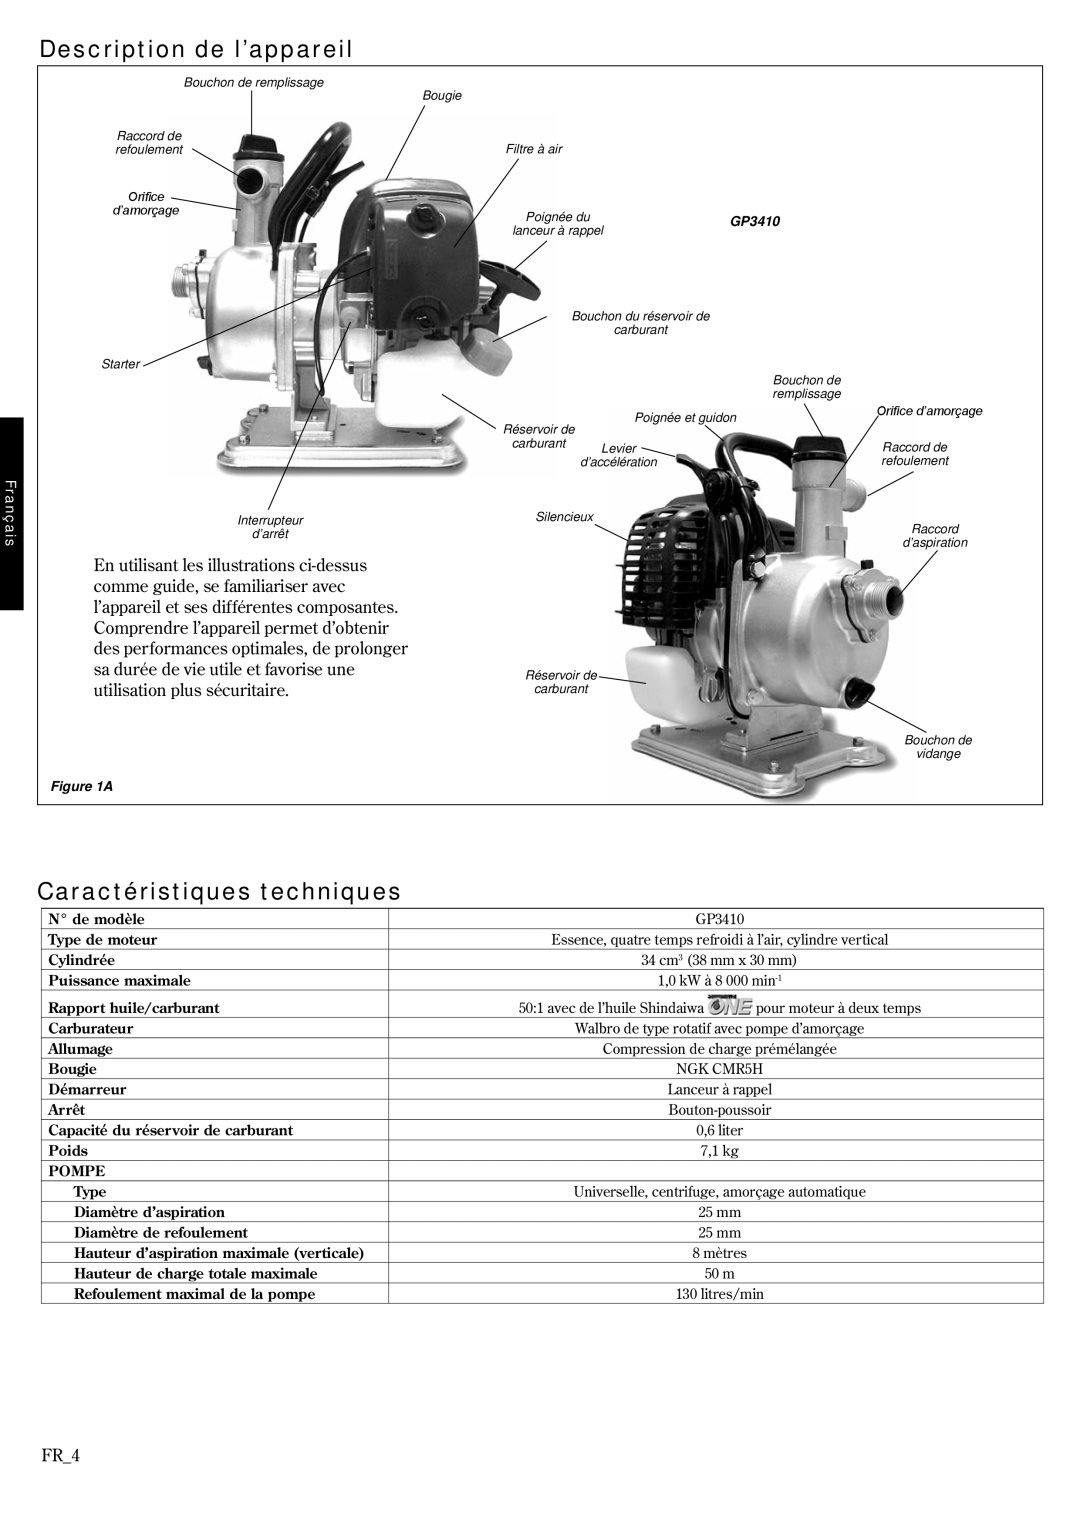 Shindaiwa 6850-9430, GP3410 manual Description de l’appareil, Caractéristiques techniques, FR_4, Français 